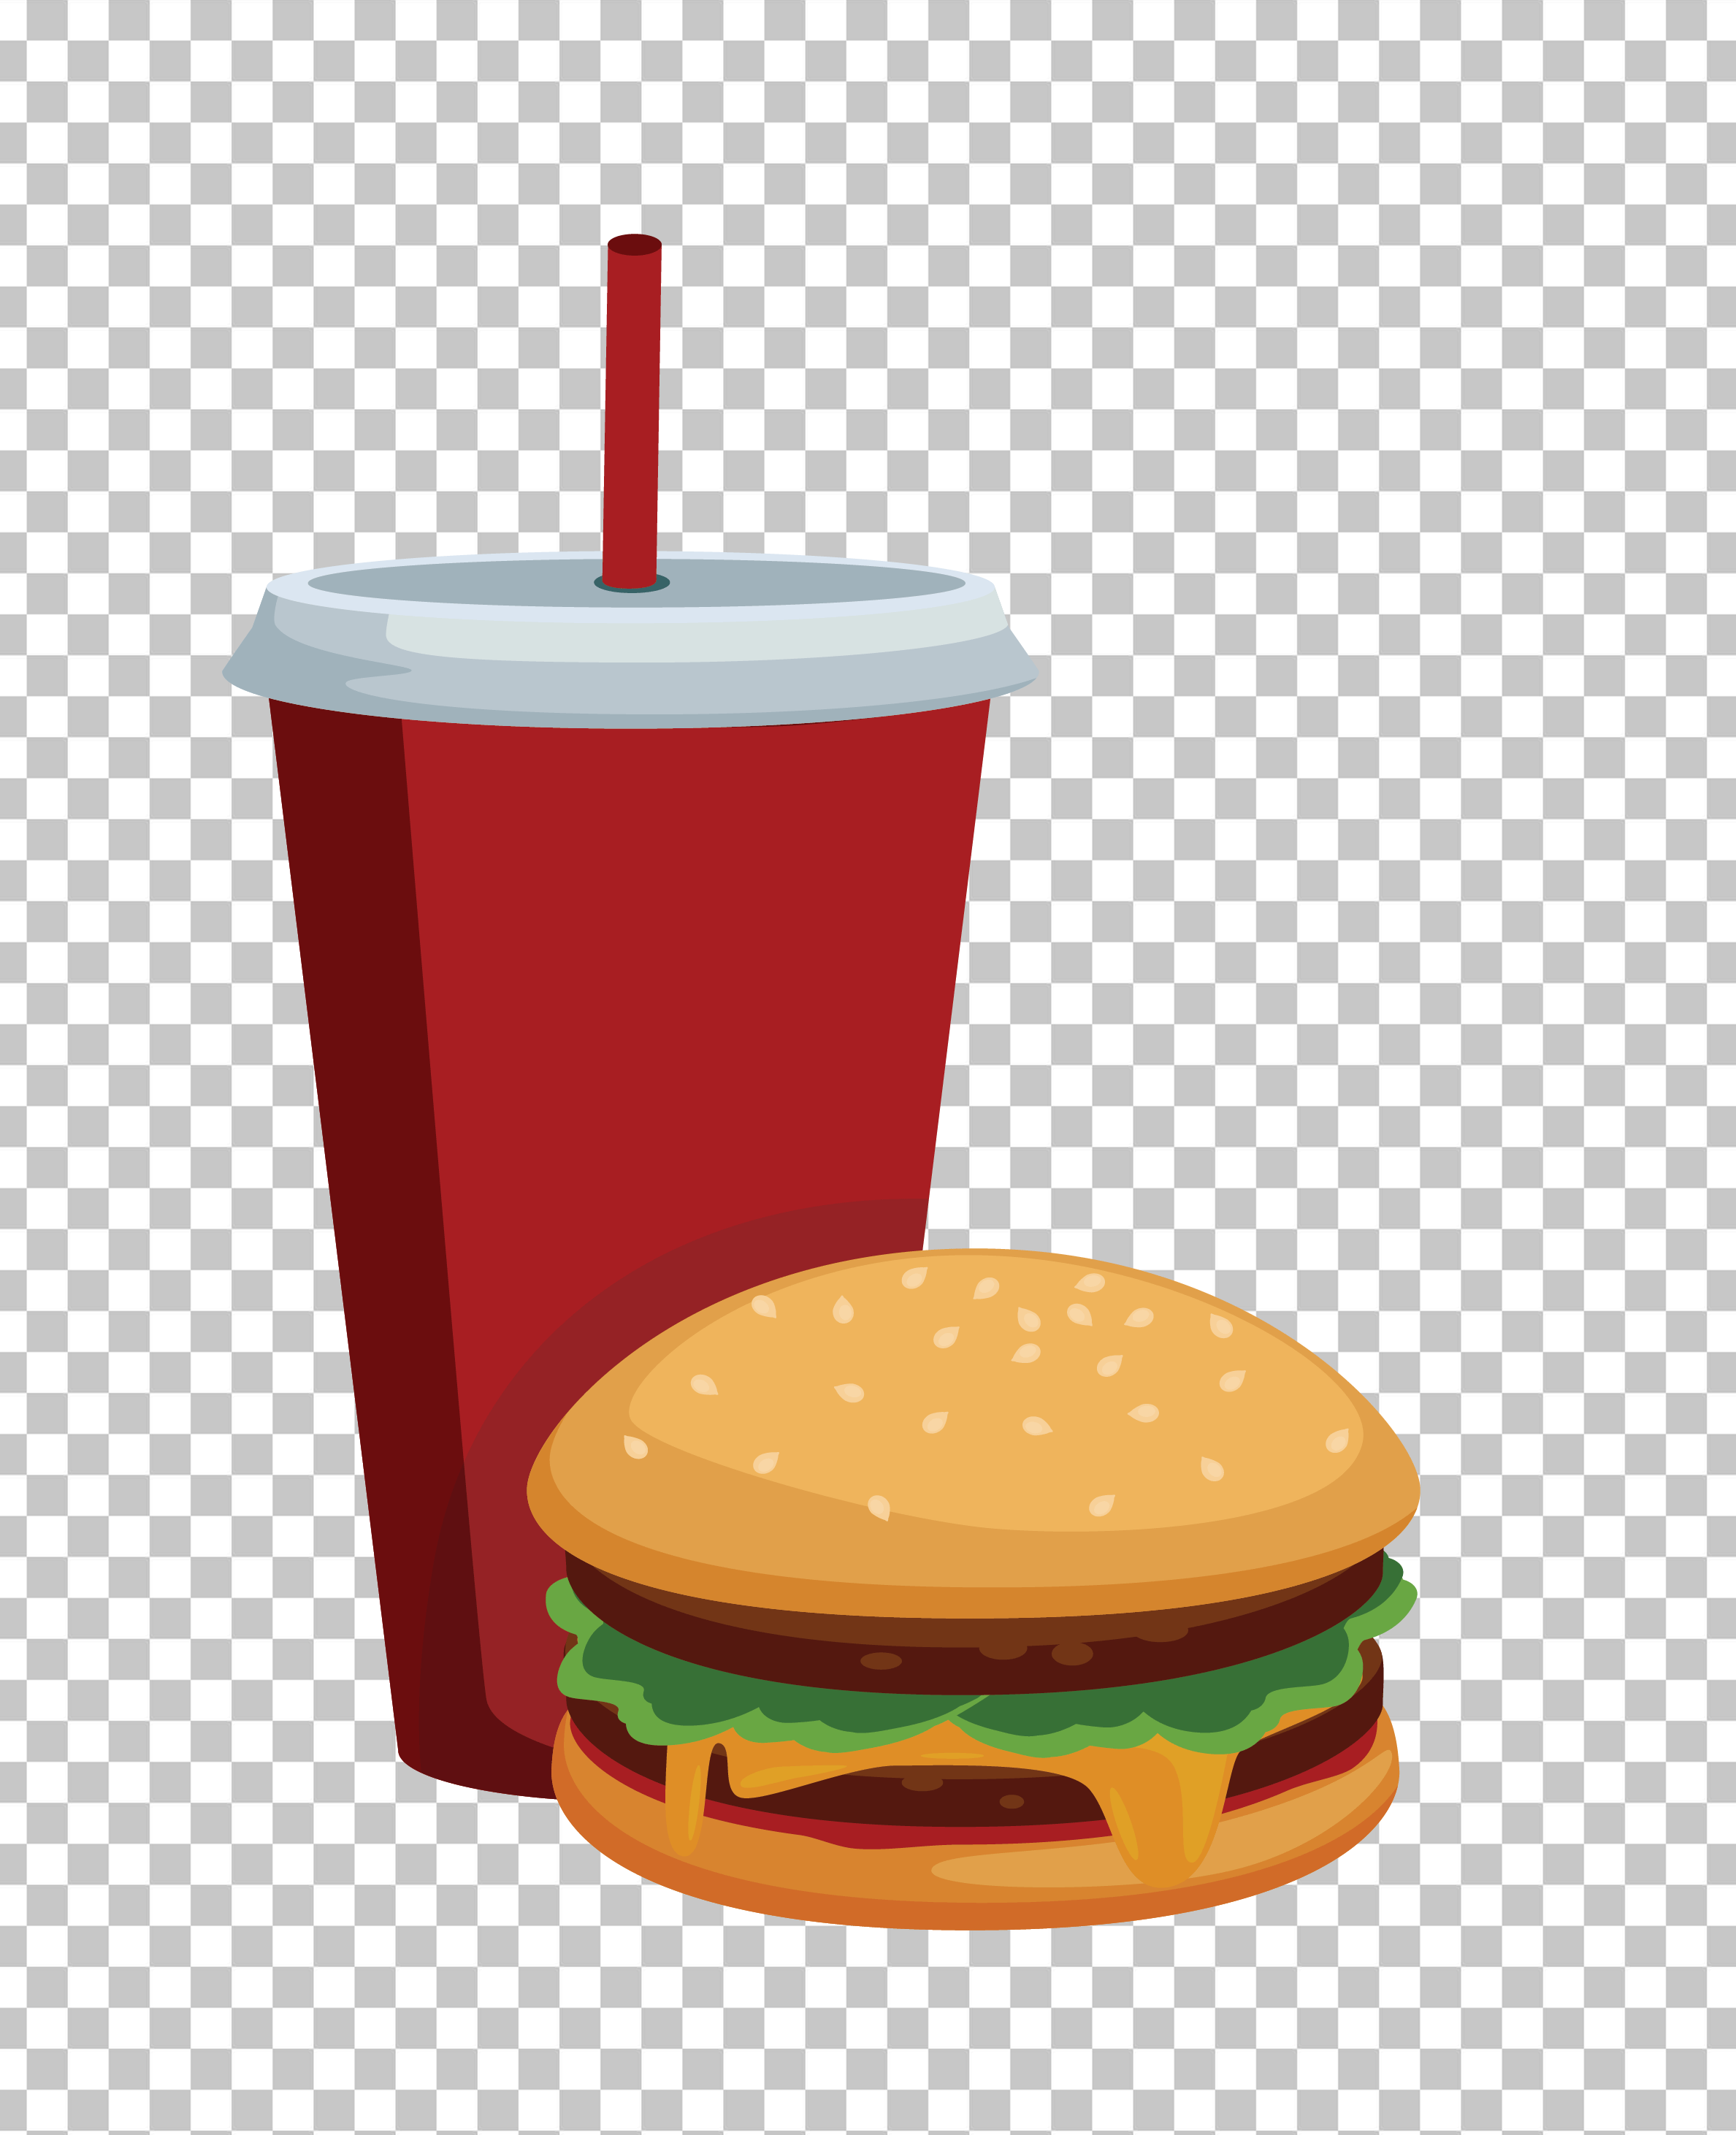 Cartoon Hamburger and Soda PNG Image